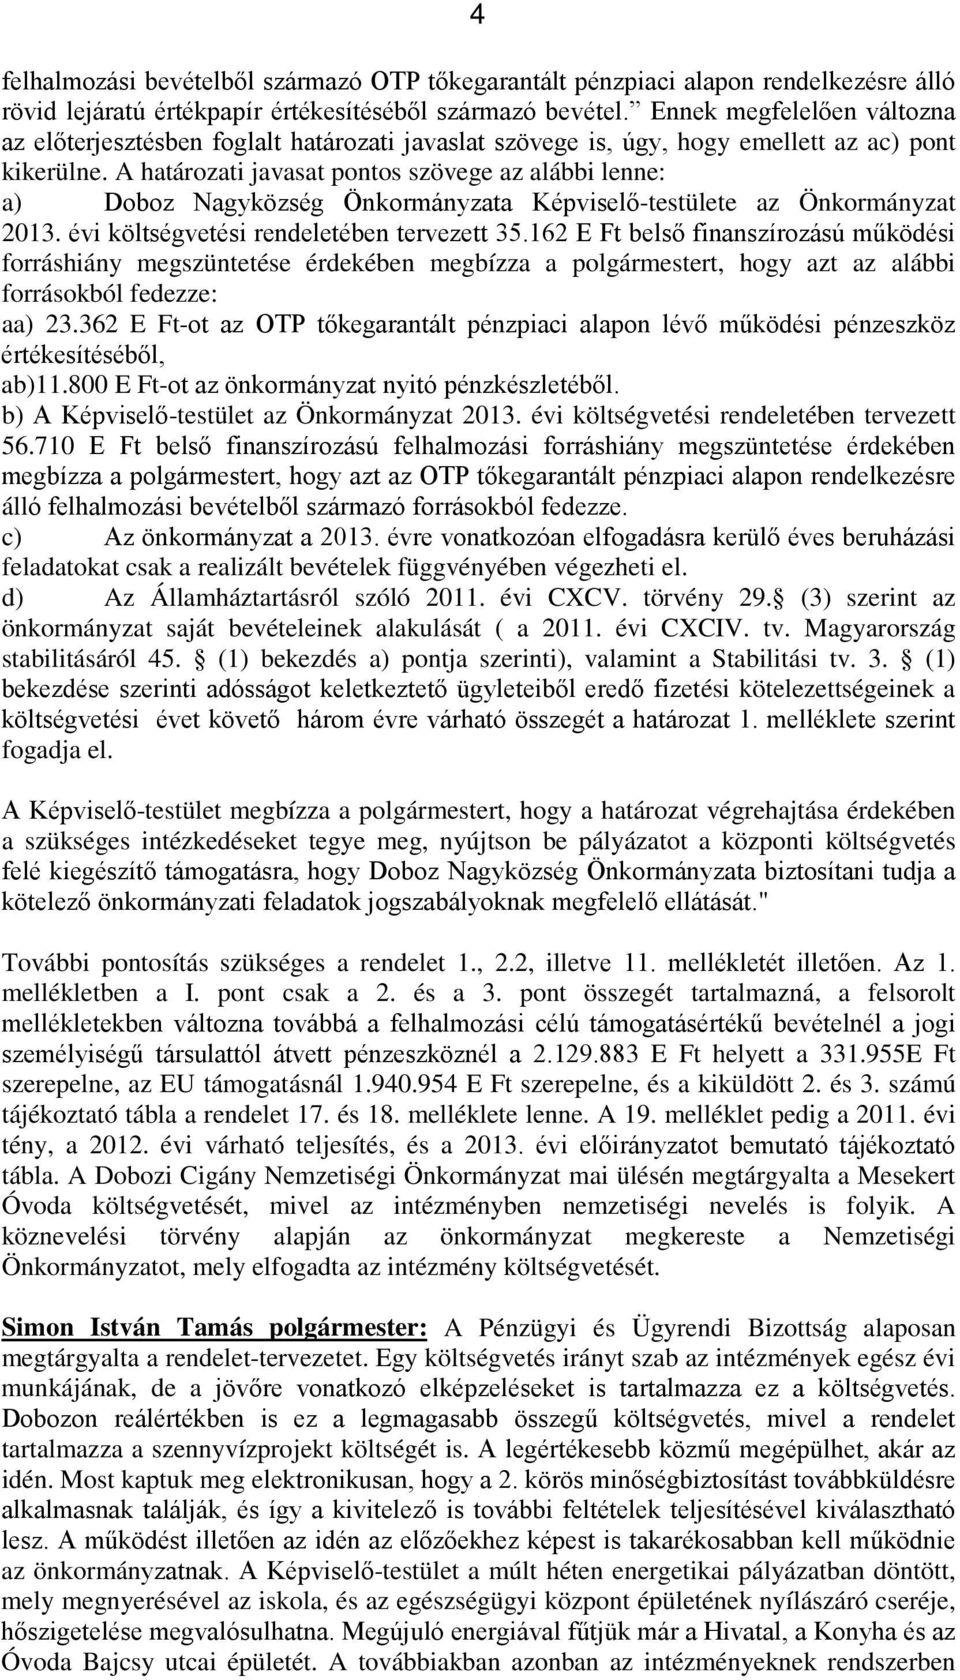 A határozati javasat pontos szövege az alábbi lenne: a) Doboz Nagyközség Önkormányzata Képviselő-testülete az Önkormányzat 2013. évi költségvetési rendeletében tervezett 35.